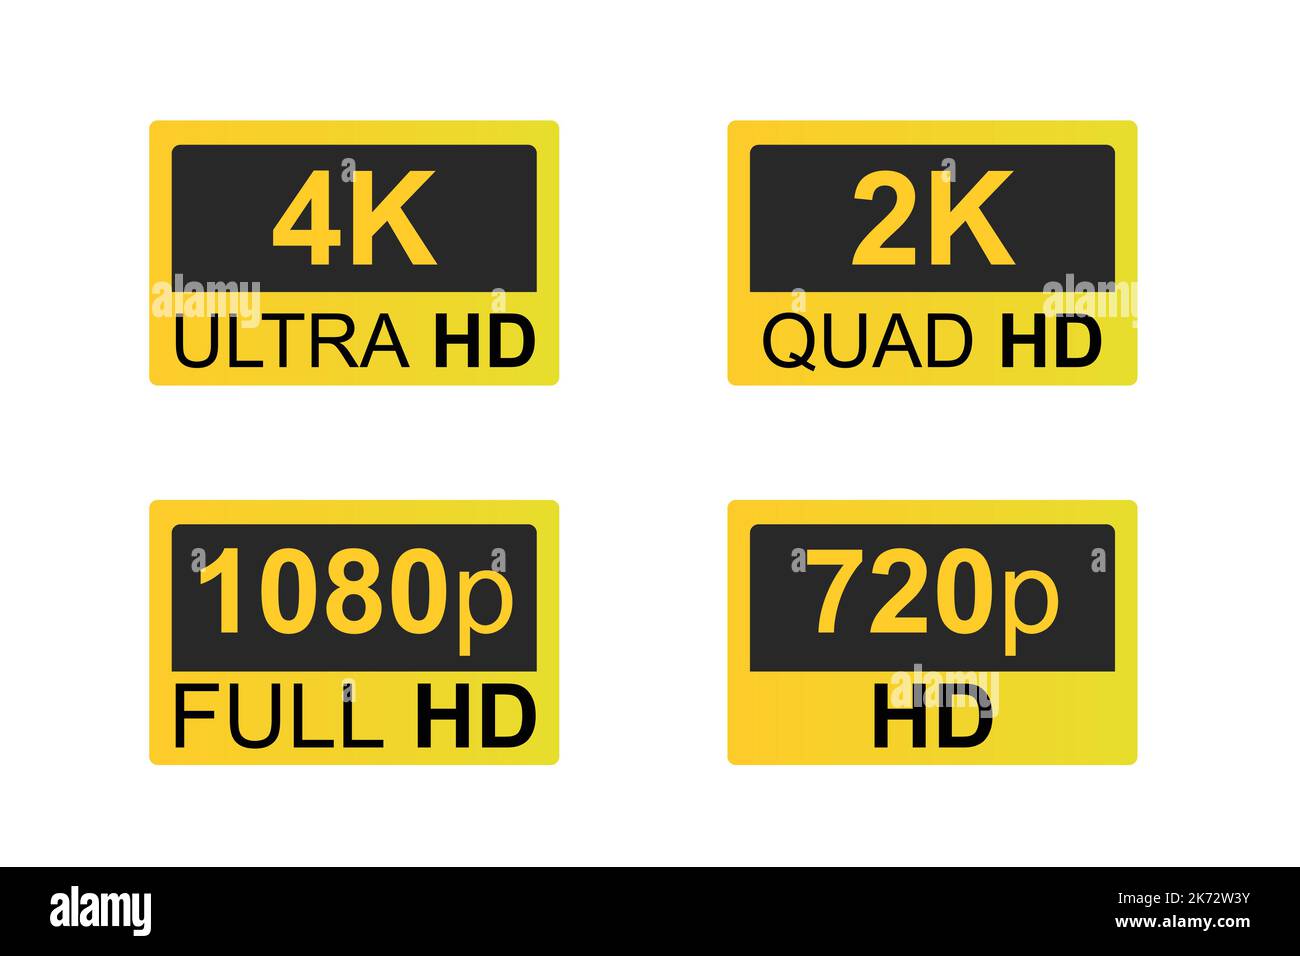 Résolution d'affichage icônes Gold, résolution 4K ultra HD, 2k Quad HD, Full HD 1080p et HD 720p. Illustration de Vecteur